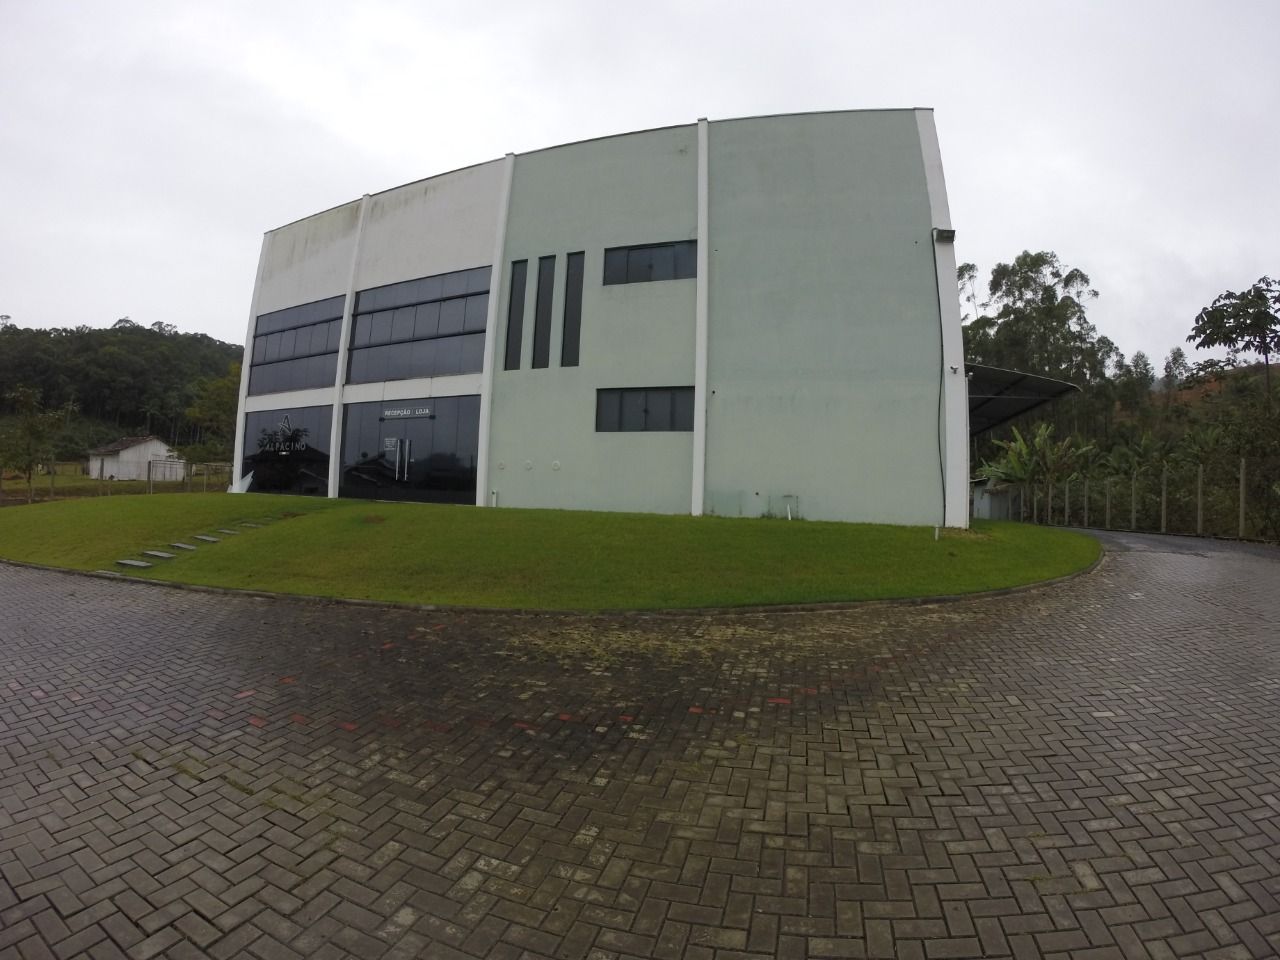 Depósito-Galpão, 1100 m² - Foto 1